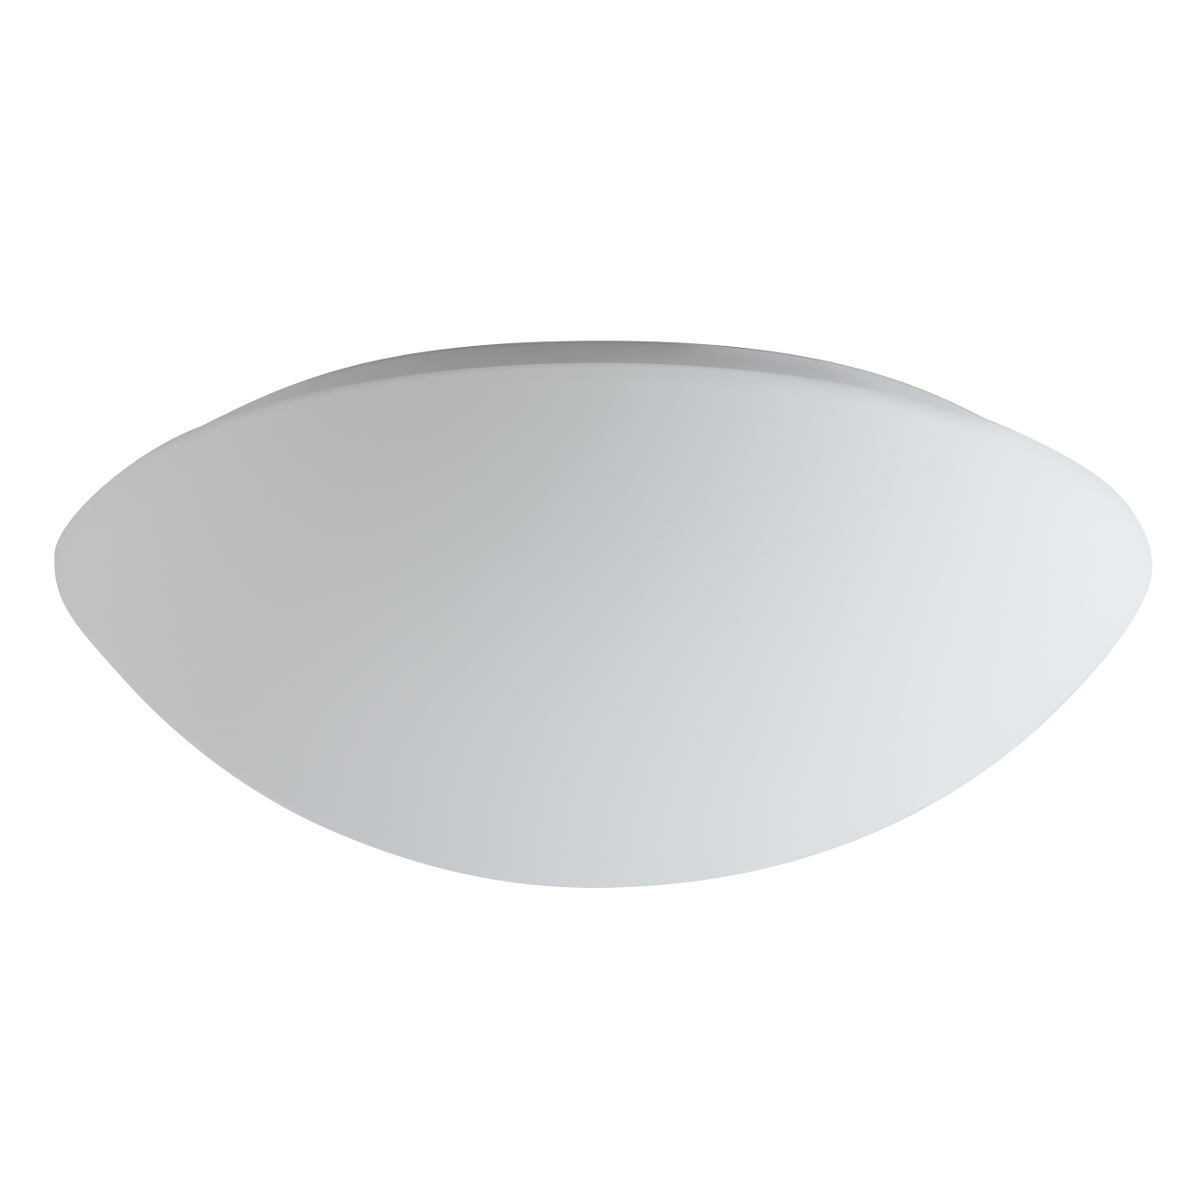 Funktionale Opalglas-Deckenleuchte AURORA LED, Ø 20–60 cm: Durchmesser 36 cm